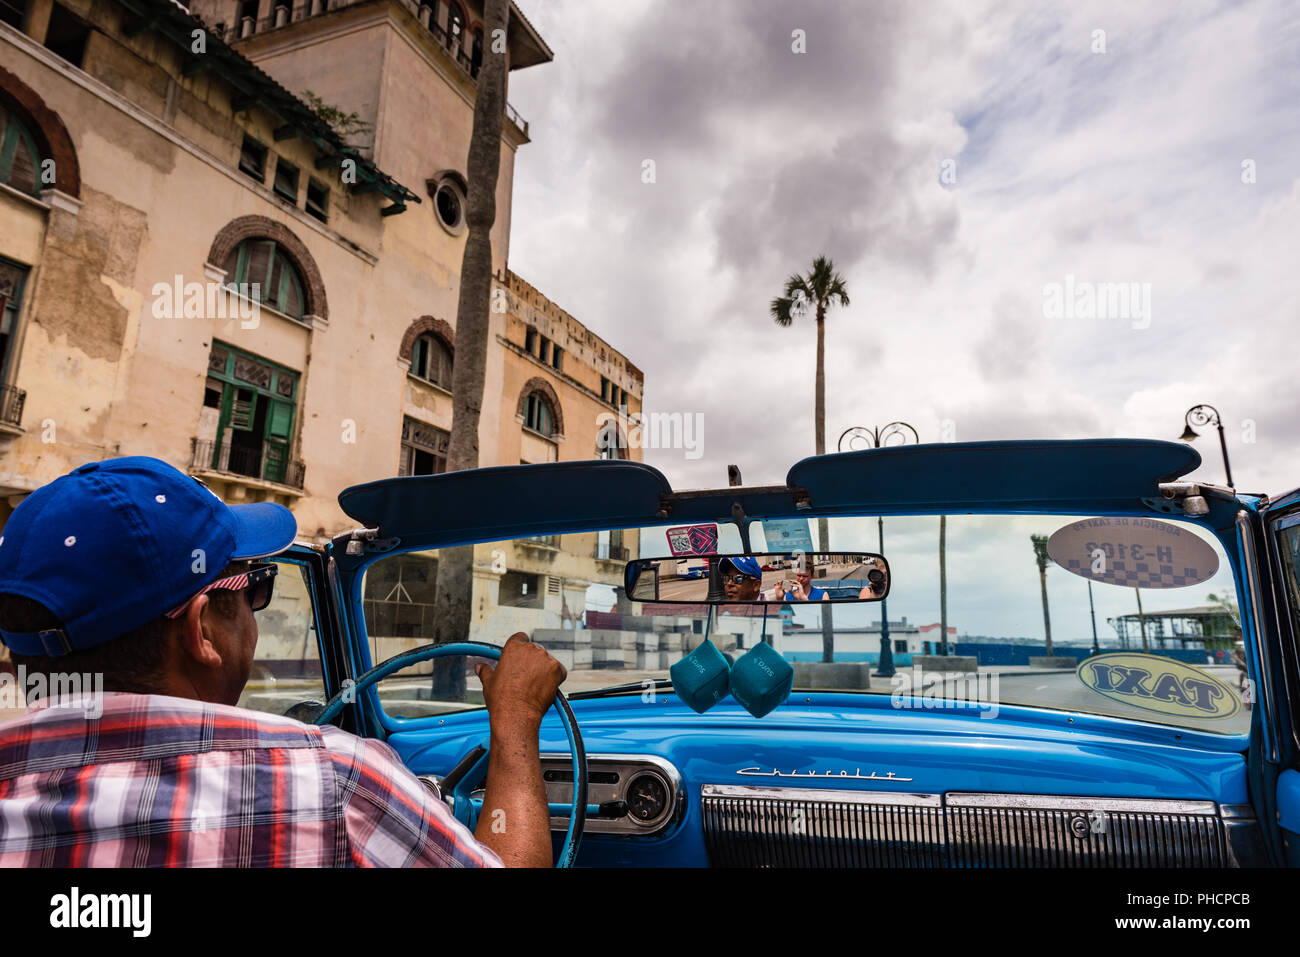 L'Avana, Cuba / Marzo 22, 2016: cubano unità uomo blu vintage convertible taxi sotto cieli grigi attraverso strade allineate con architettura coloniale. Foto Stock